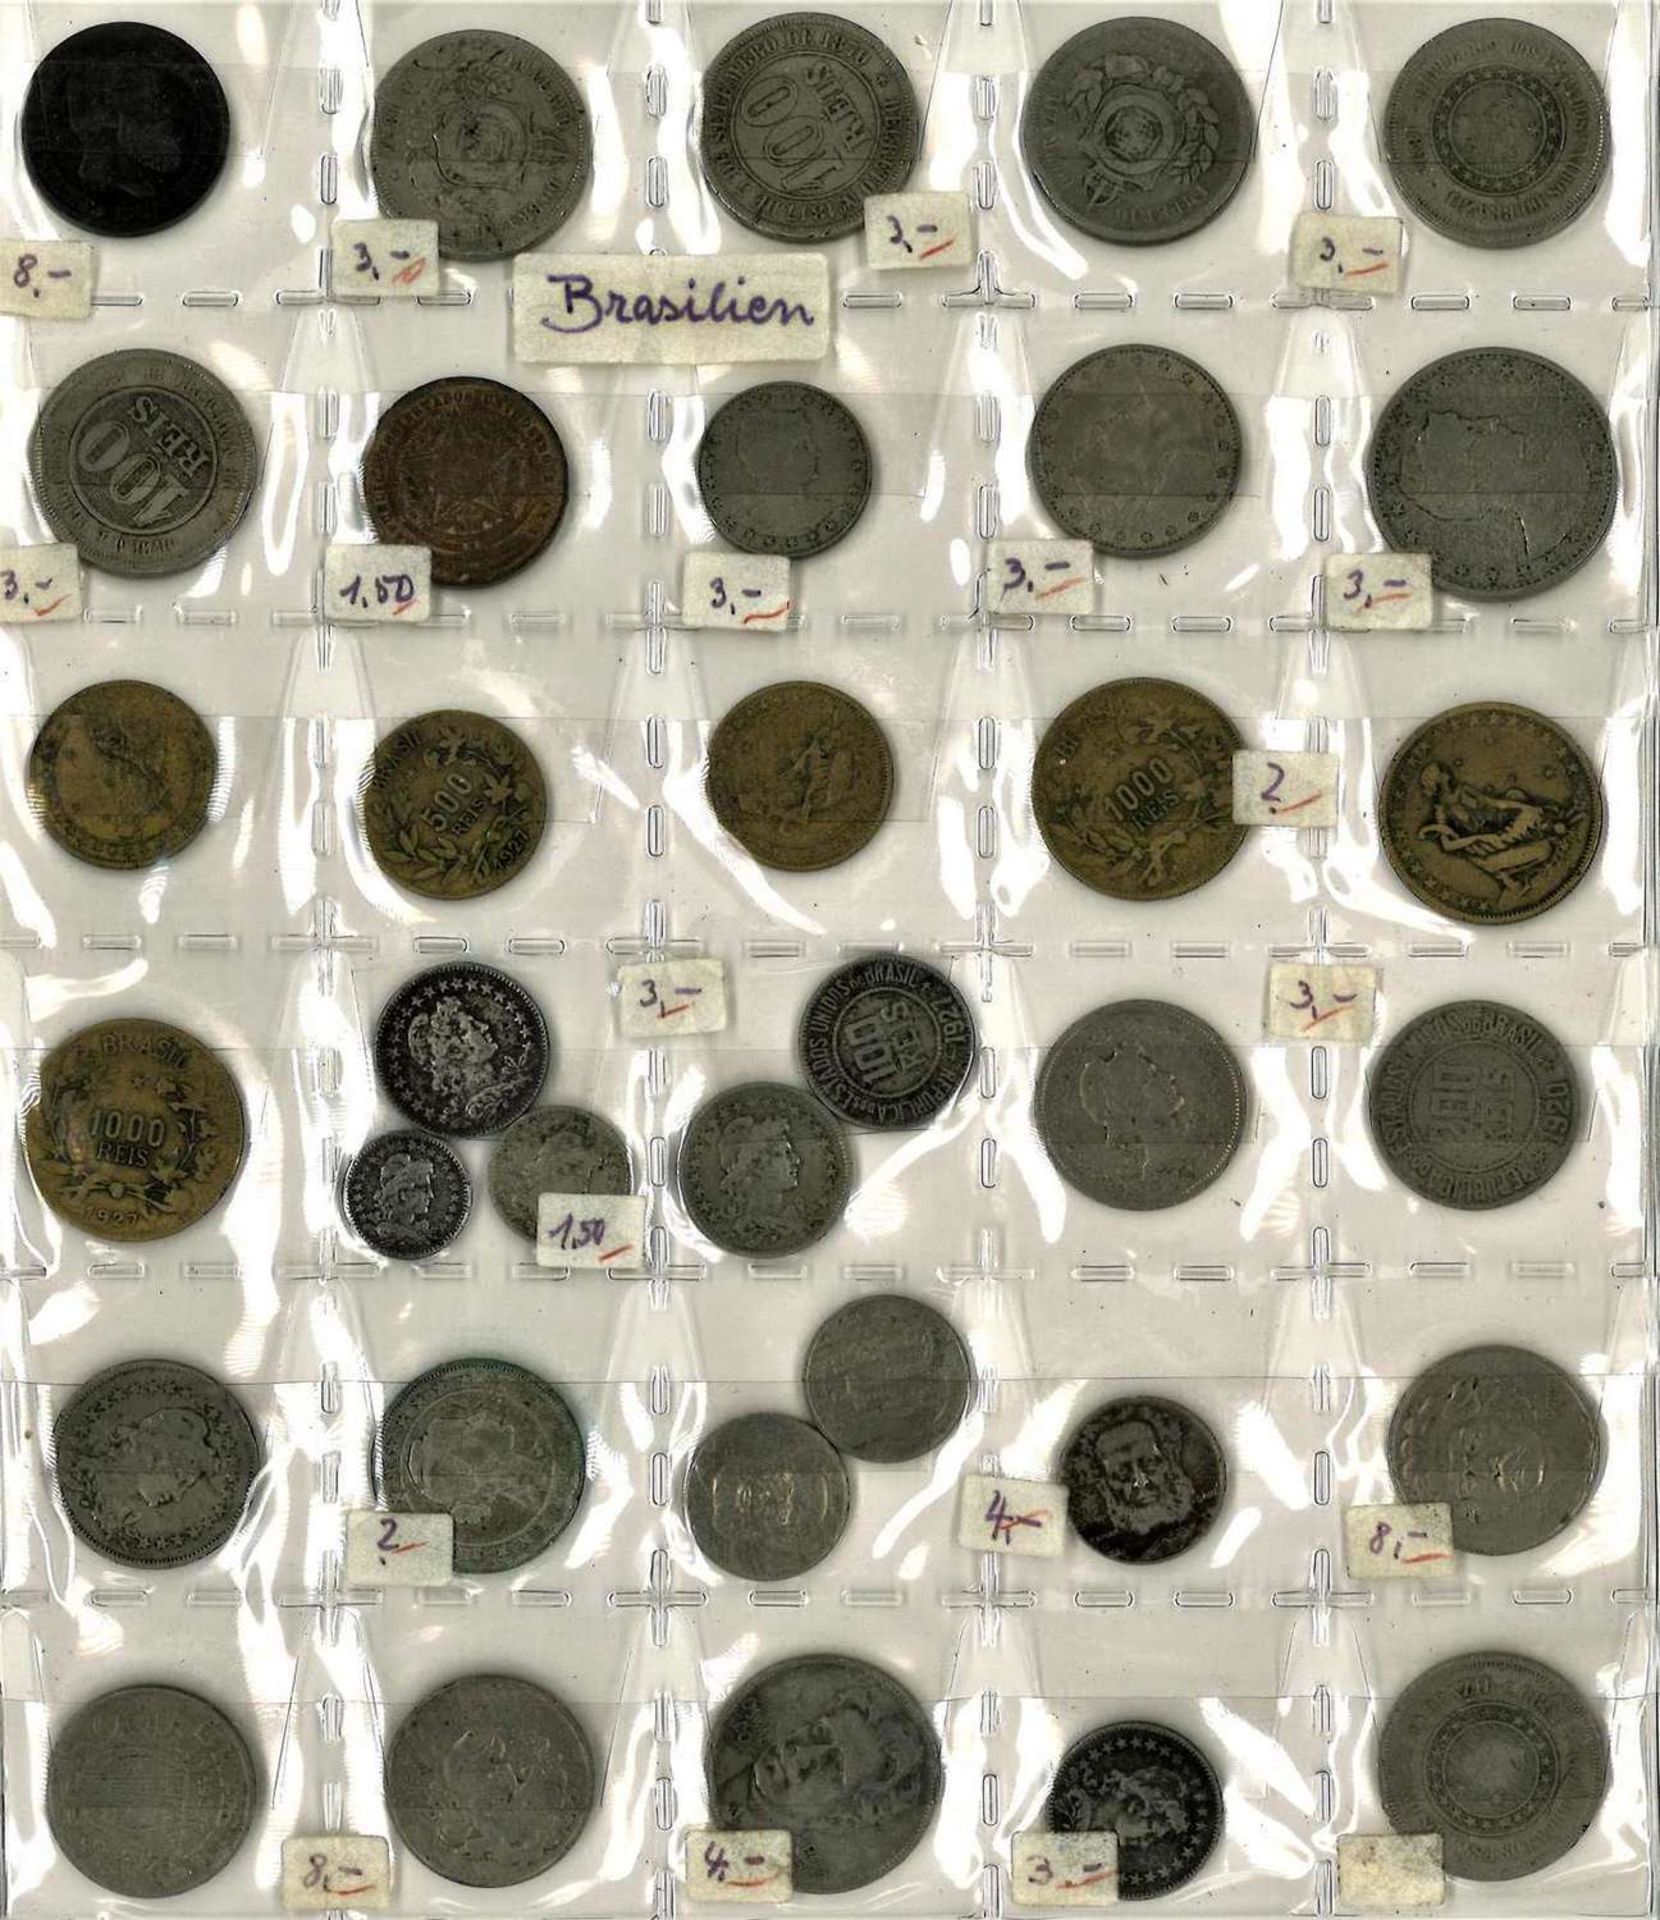 Lot Münzen alle Welt im Album, dabei z.B. Ceylon, Indien, Israel, Brasilien, Australien etc. - Bild 2 aus 4